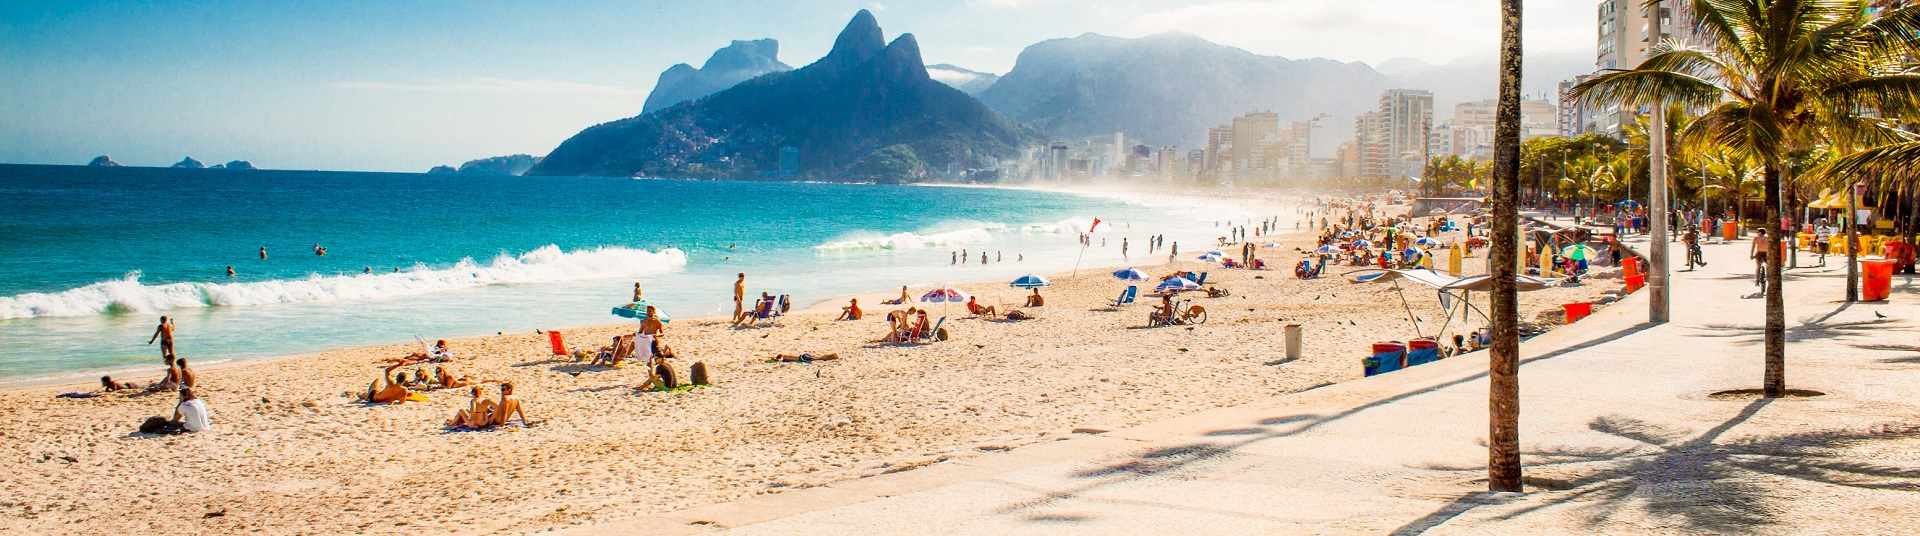 Hôtel pas cher Rio de Janeiro